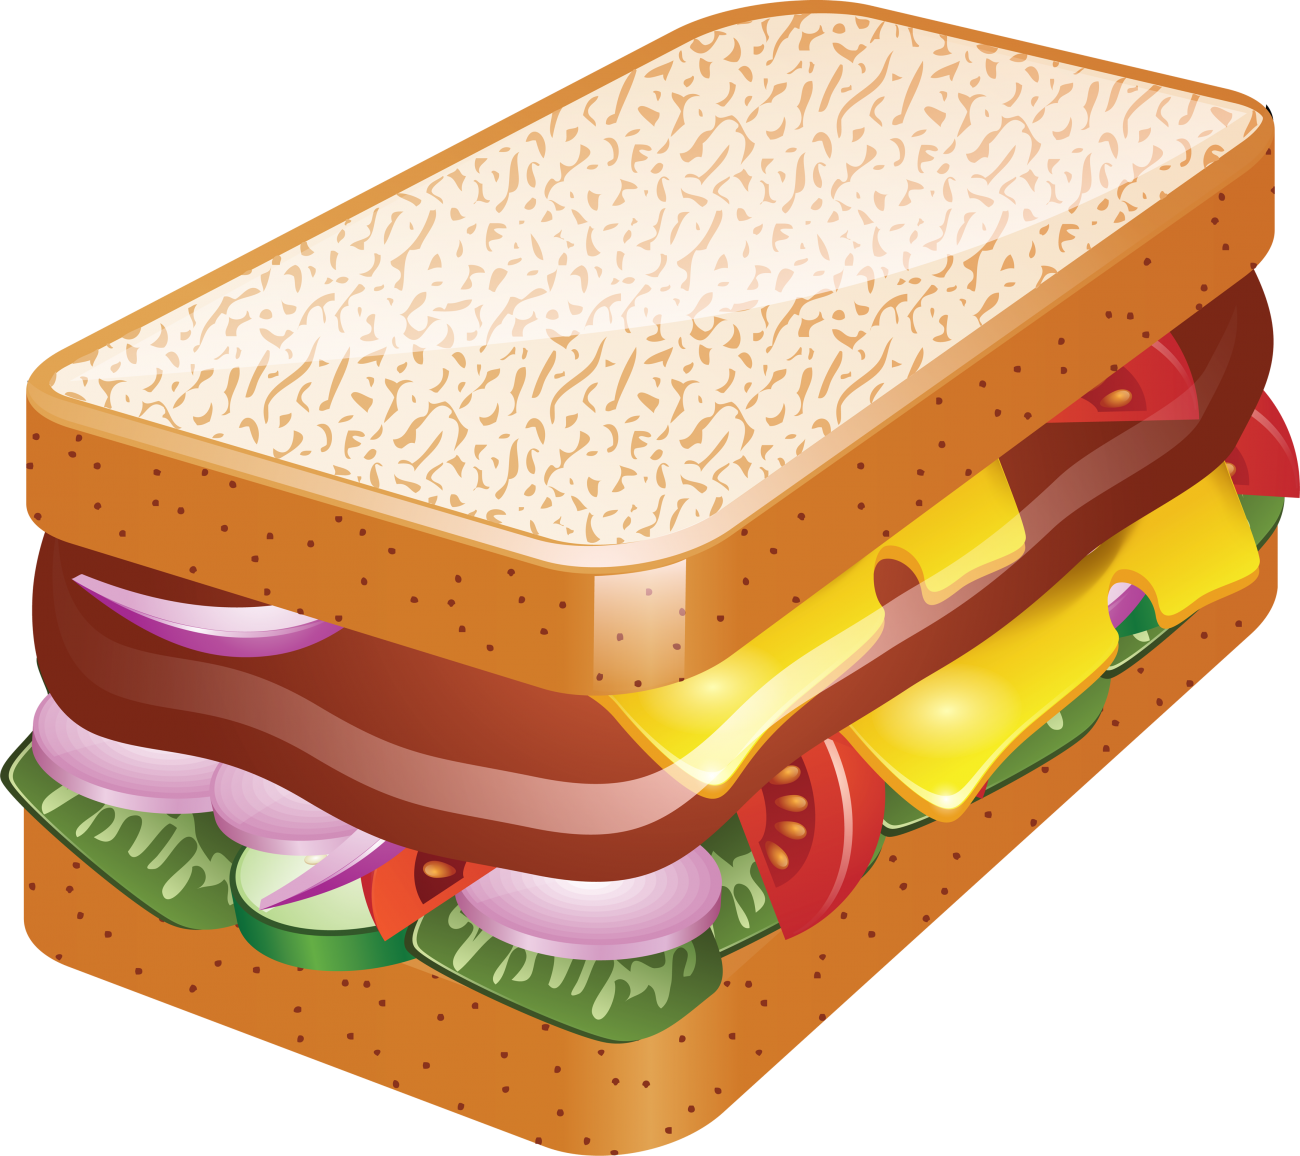 三明治隔離集速食小吃向量素描插圖咖啡廳午餐選單手繪復古設計元素向量圖形及更多三文治圖片 - 三文治, 草圖, 芝士三文治 - iStock